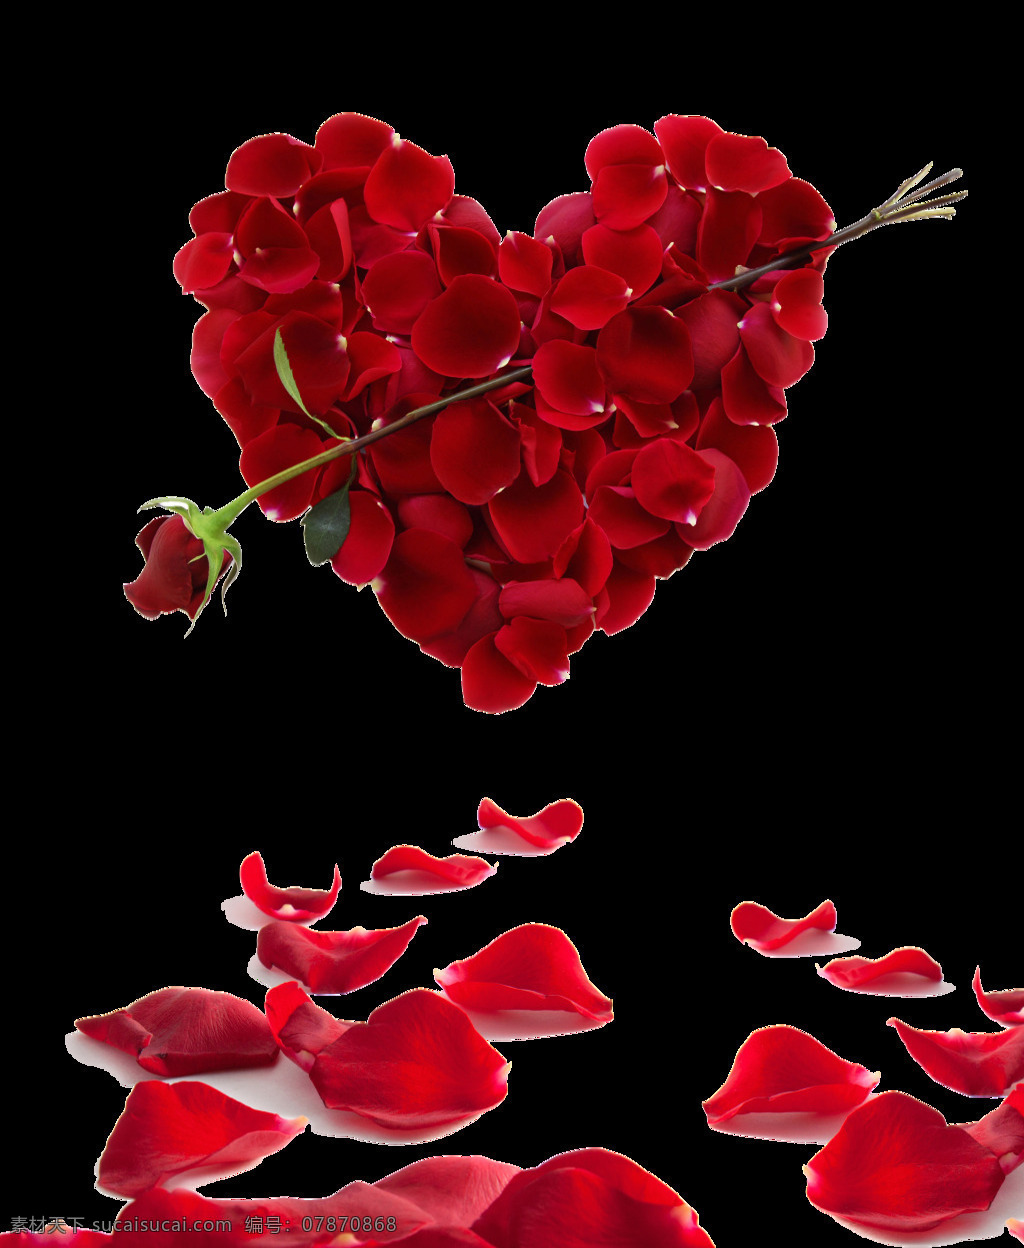 爱心 红玫瑰 情人节 元素 爱心玫瑰 玫瑰 玫瑰花瓣 情人节装饰 一箭穿心